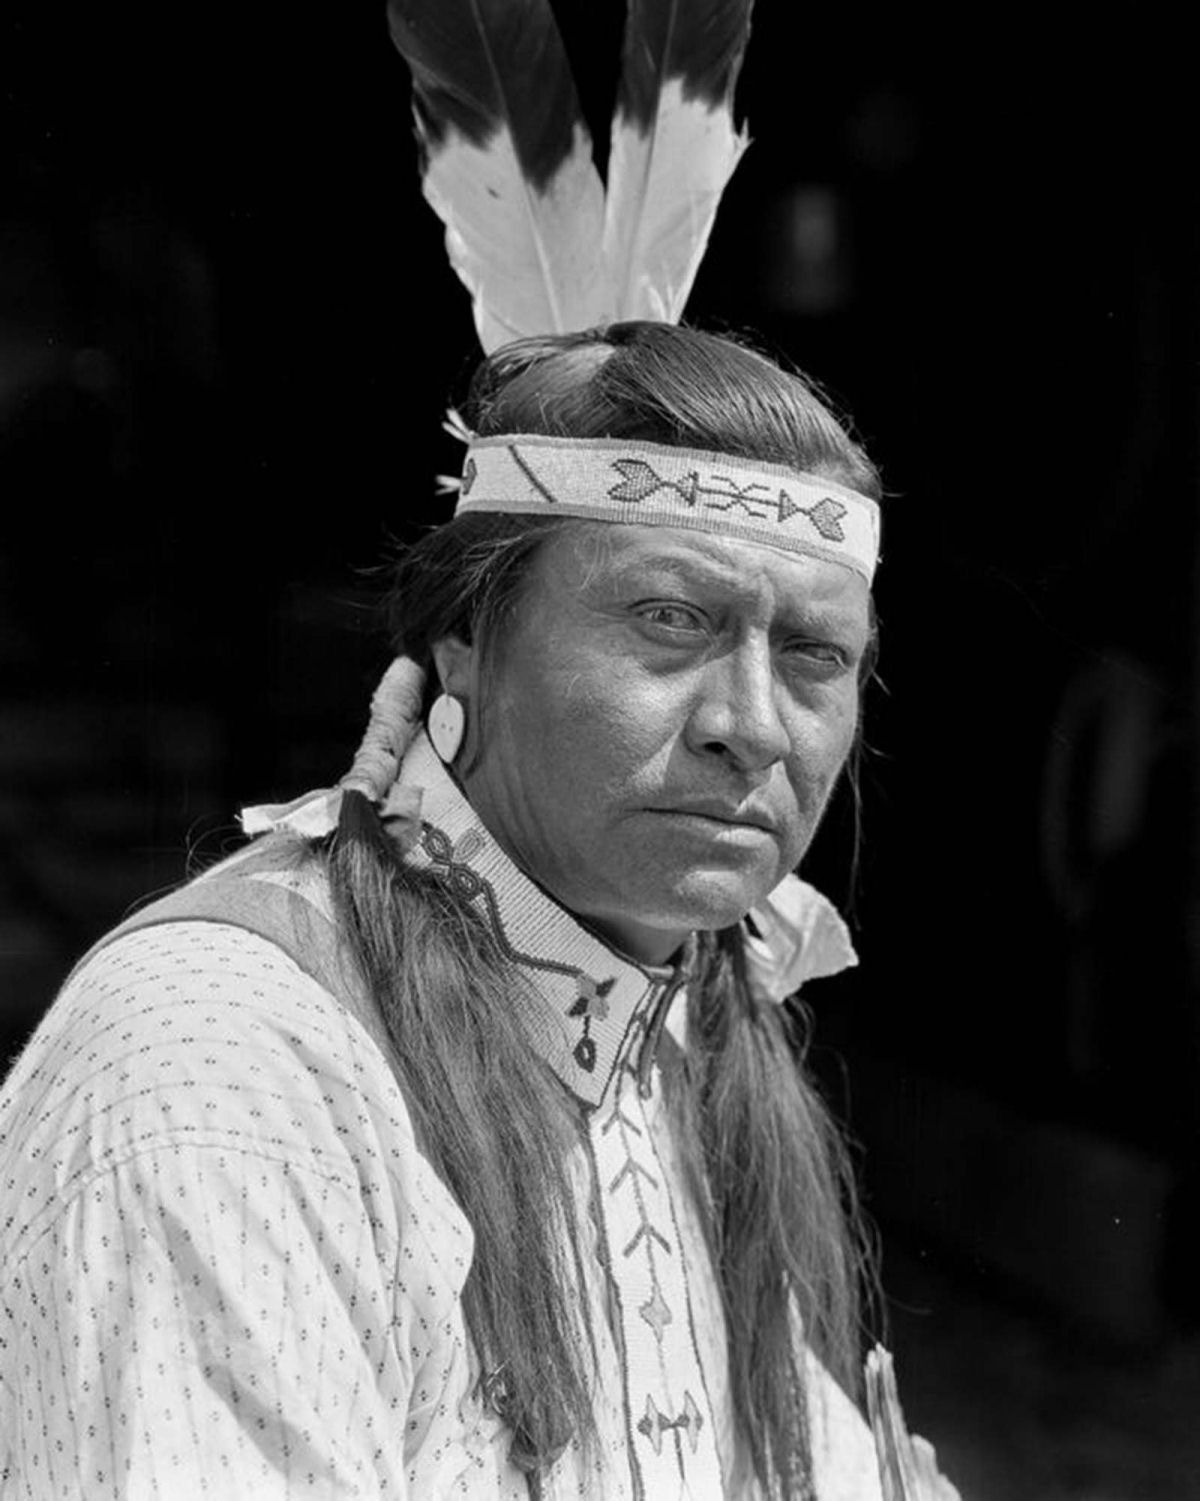 Os nativos das Primeiras Nações do Canadá em fotos históricas raras 19